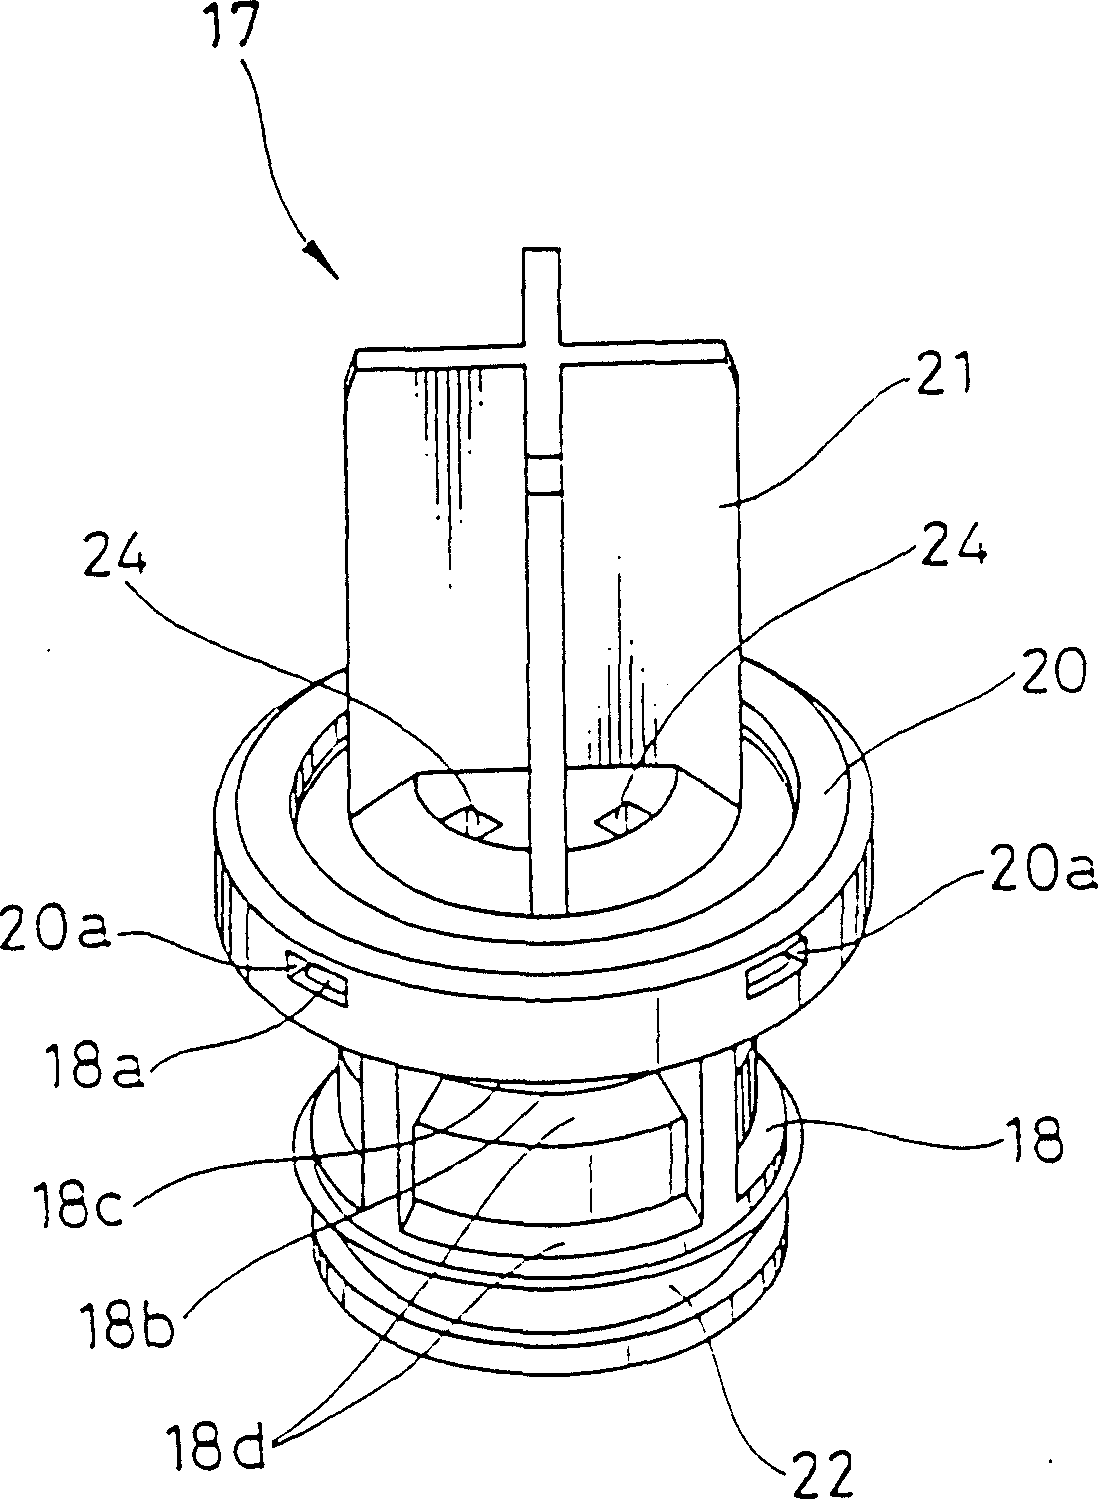 Liquid control valve